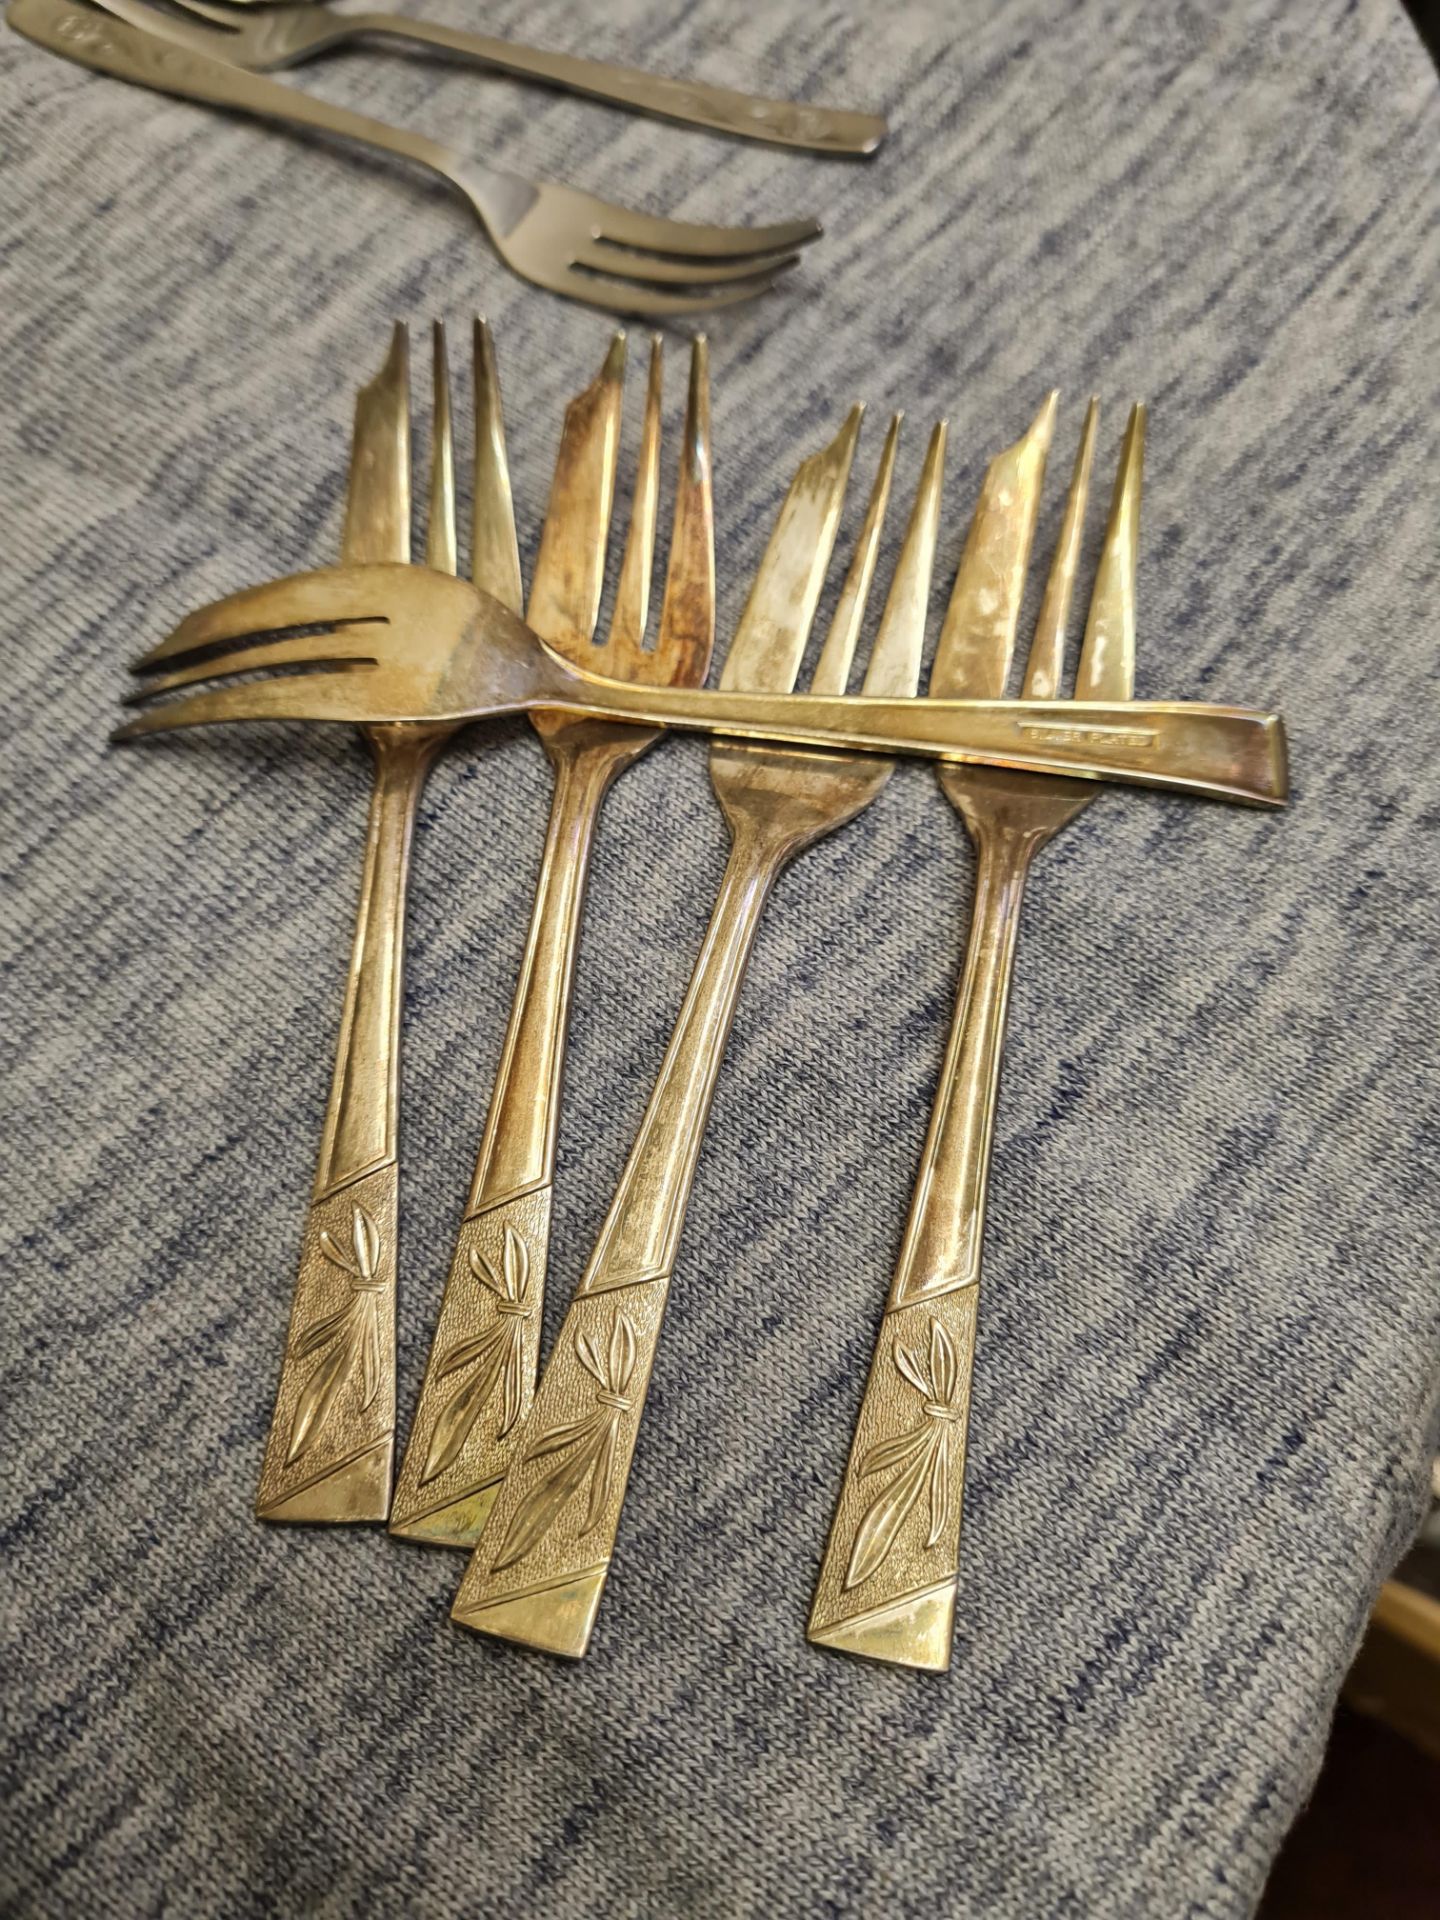 Vintage silver plated forks